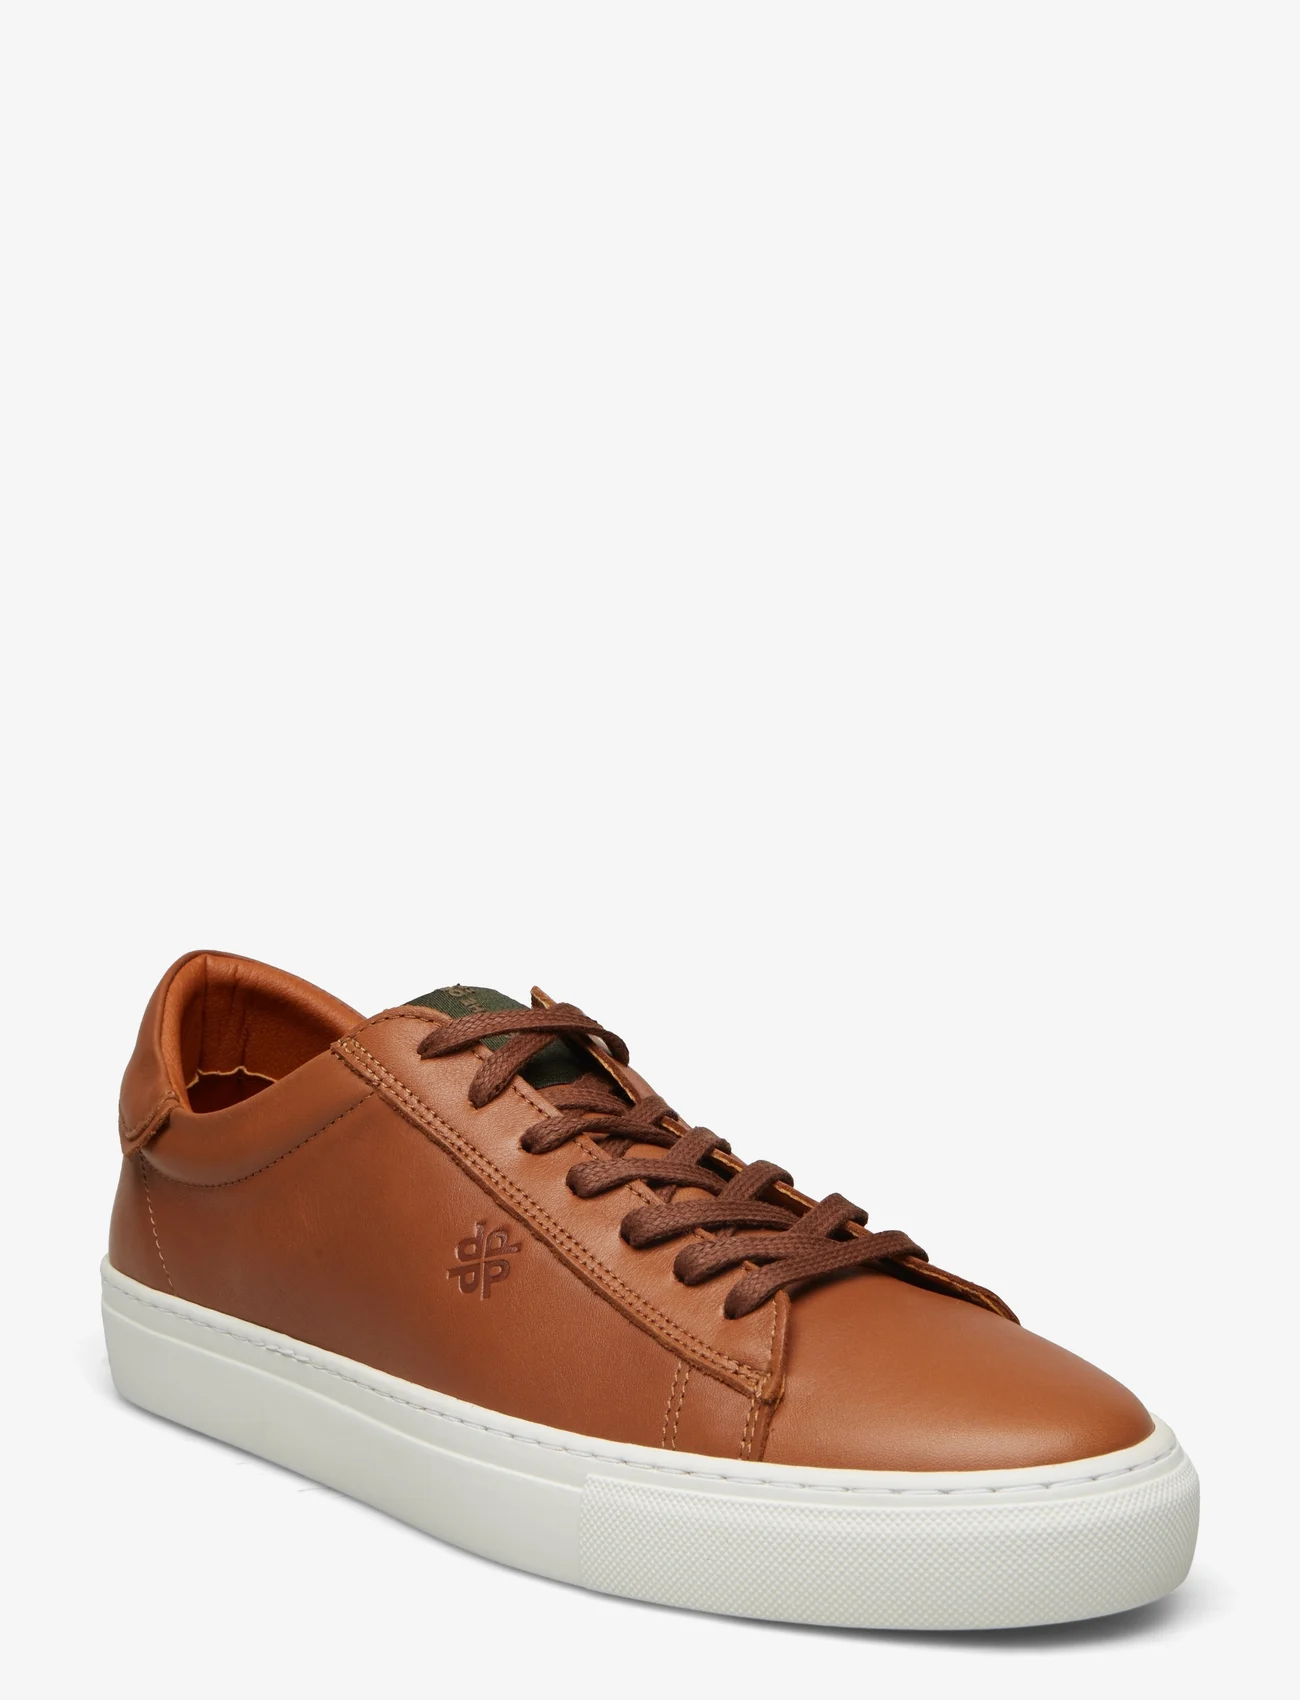 Playboy Footwear - Henri - lav ankel - brown leather - 0